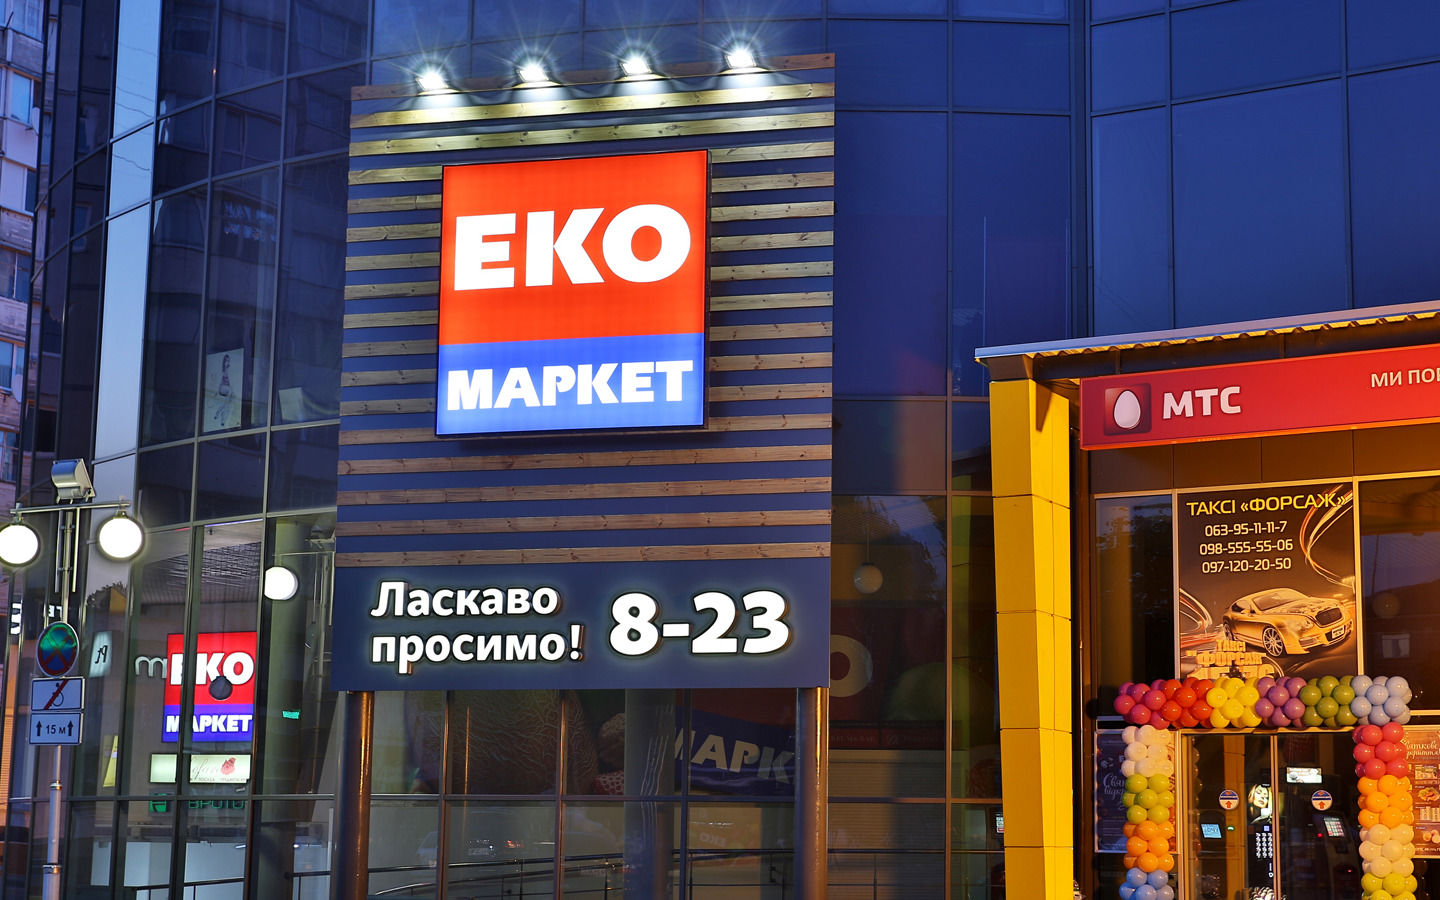 ЕКО-Маркет — вакансия в Заместитель управляющего магазином ( Днепровская набережная  )